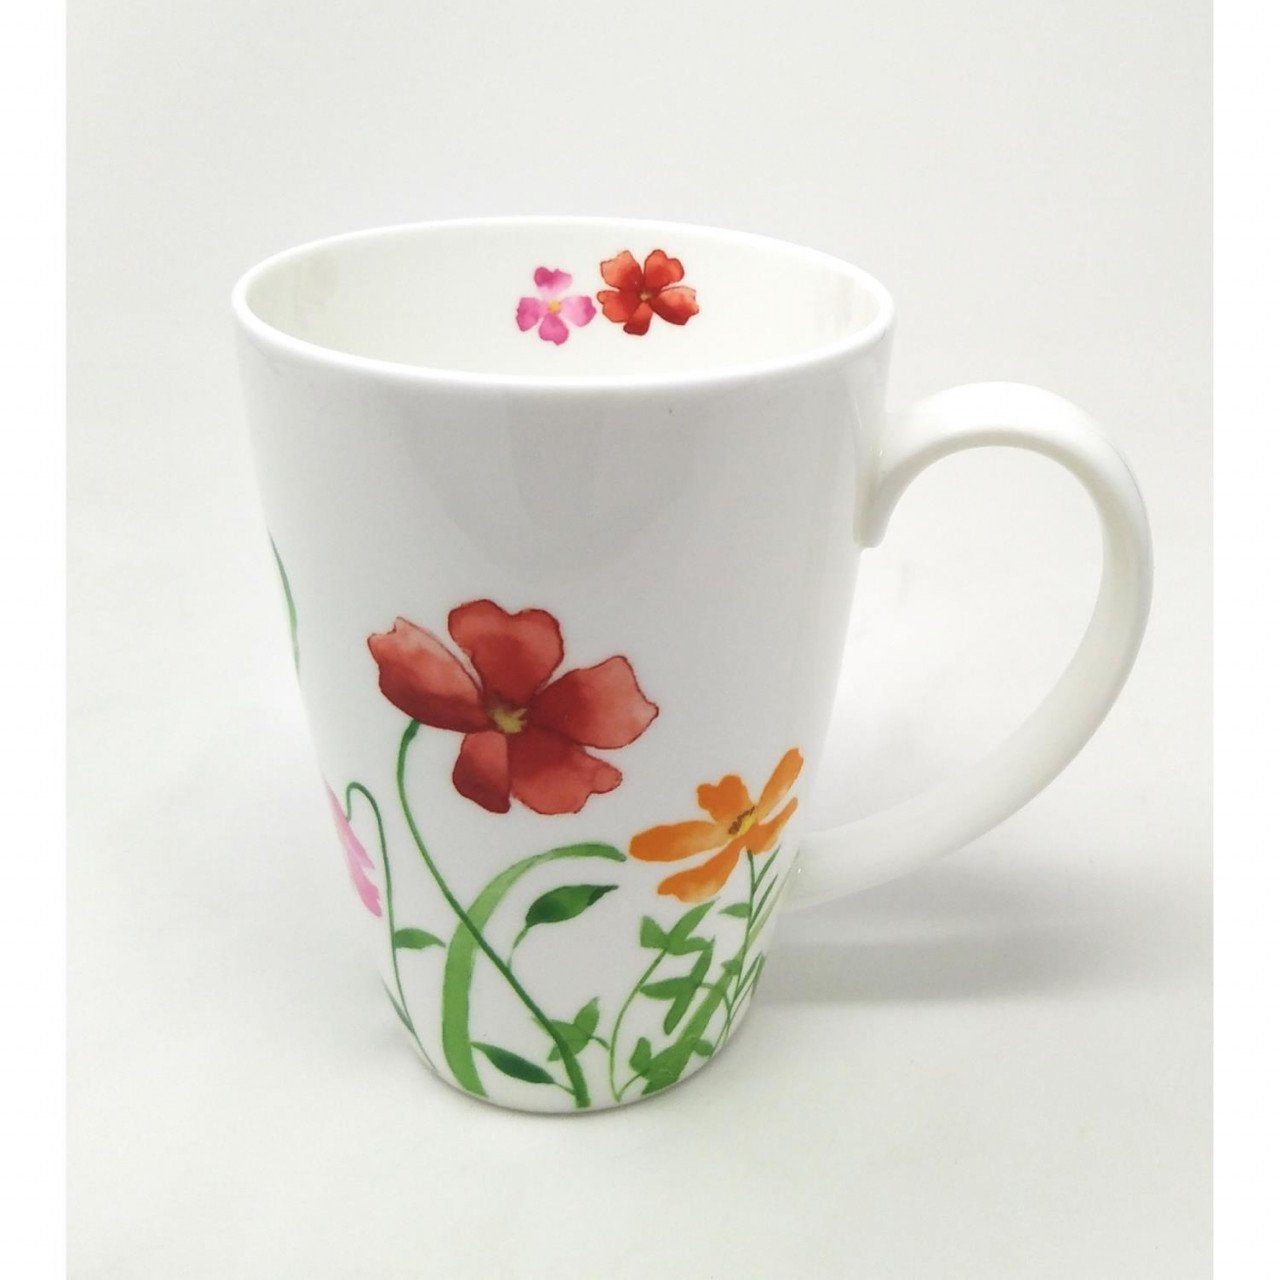 Becher Porzellan Blumen, H:13.5cm B:10cm Weiß Porzellan, L:14cm D:10cm TeaLogic